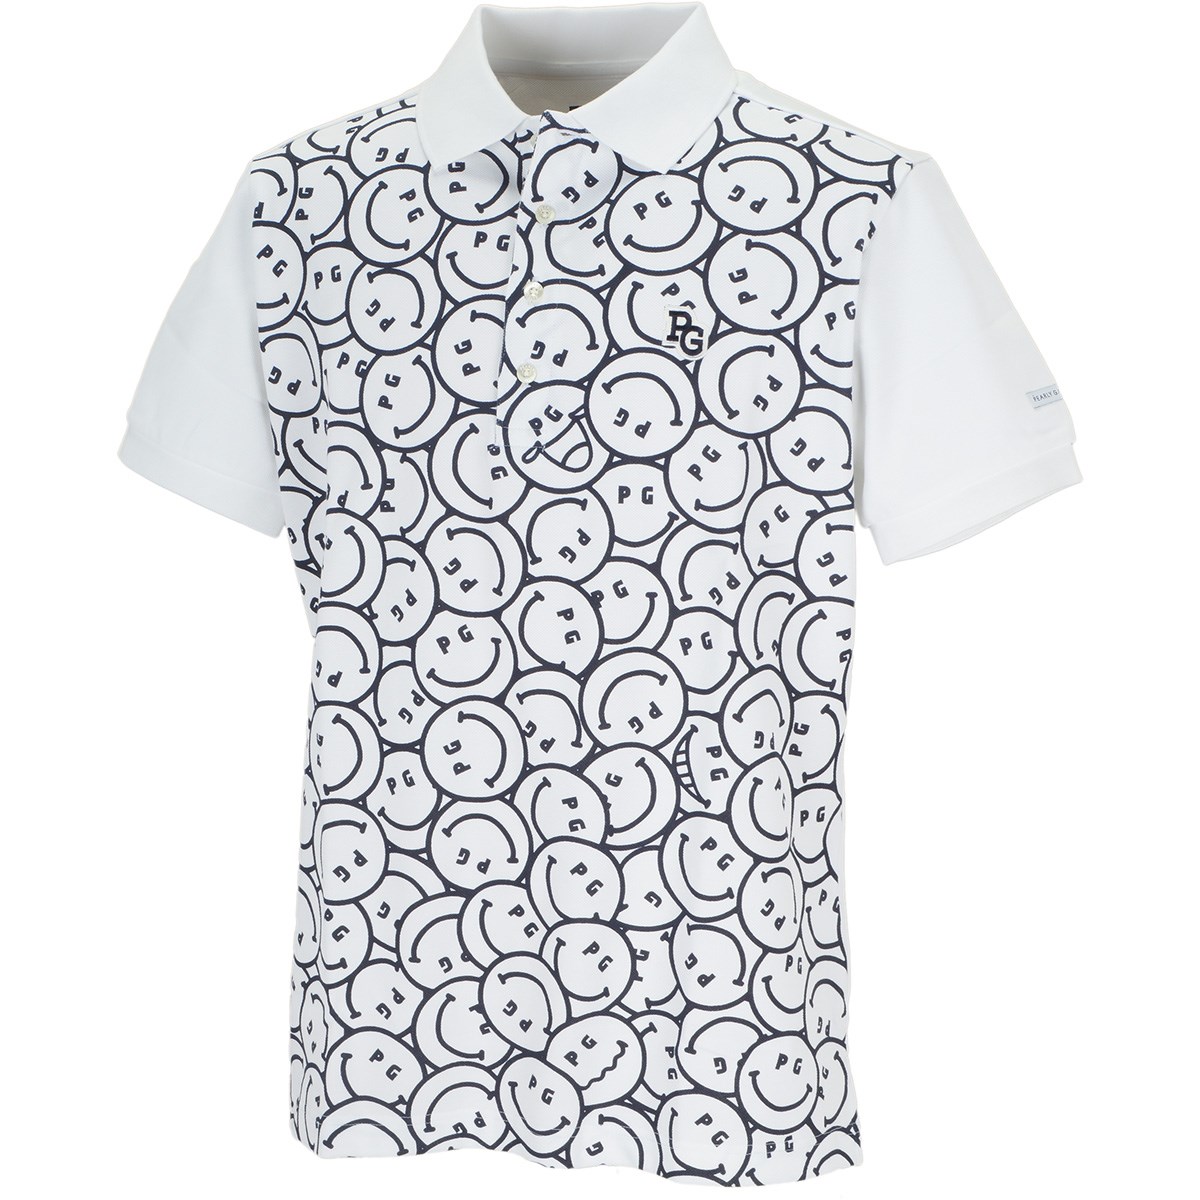 「パーリーゲイツ ドライマスター 4口鹿の子 ニコ柄半袖ポロシャツ 」（ポロシャツ・シャツ）- ゴルフ(GOLF)用品のネット通販